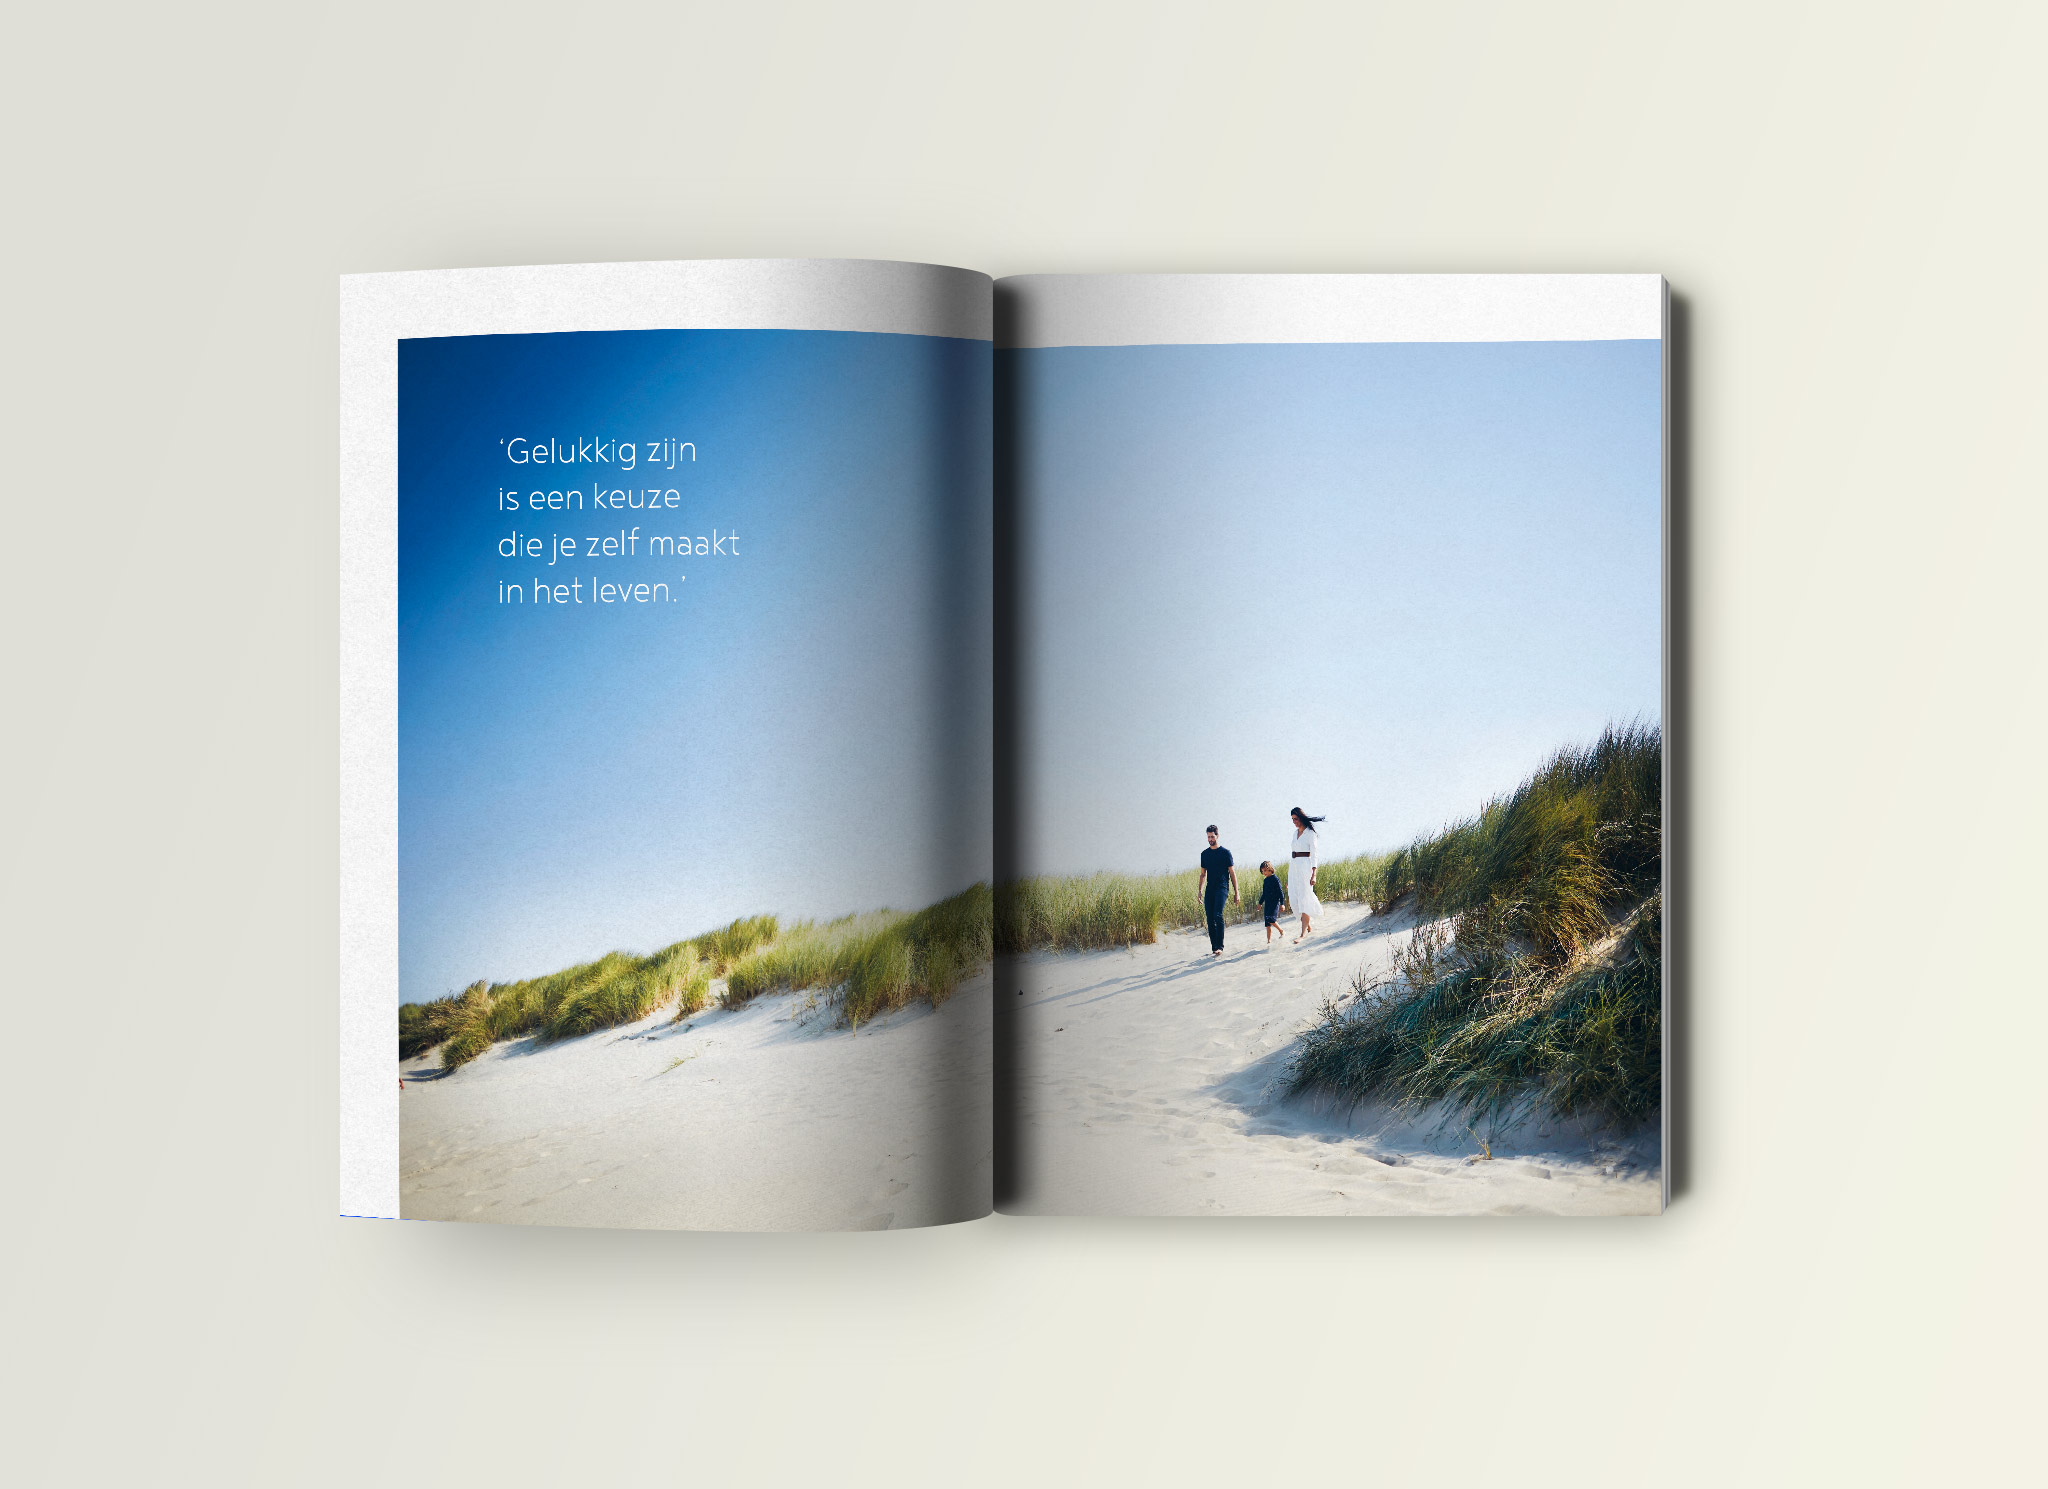 Boekontwerp voor het boek #HighFive van Delphine Steelandt en Bert van Guyze voor Lannoo uitgeverij.